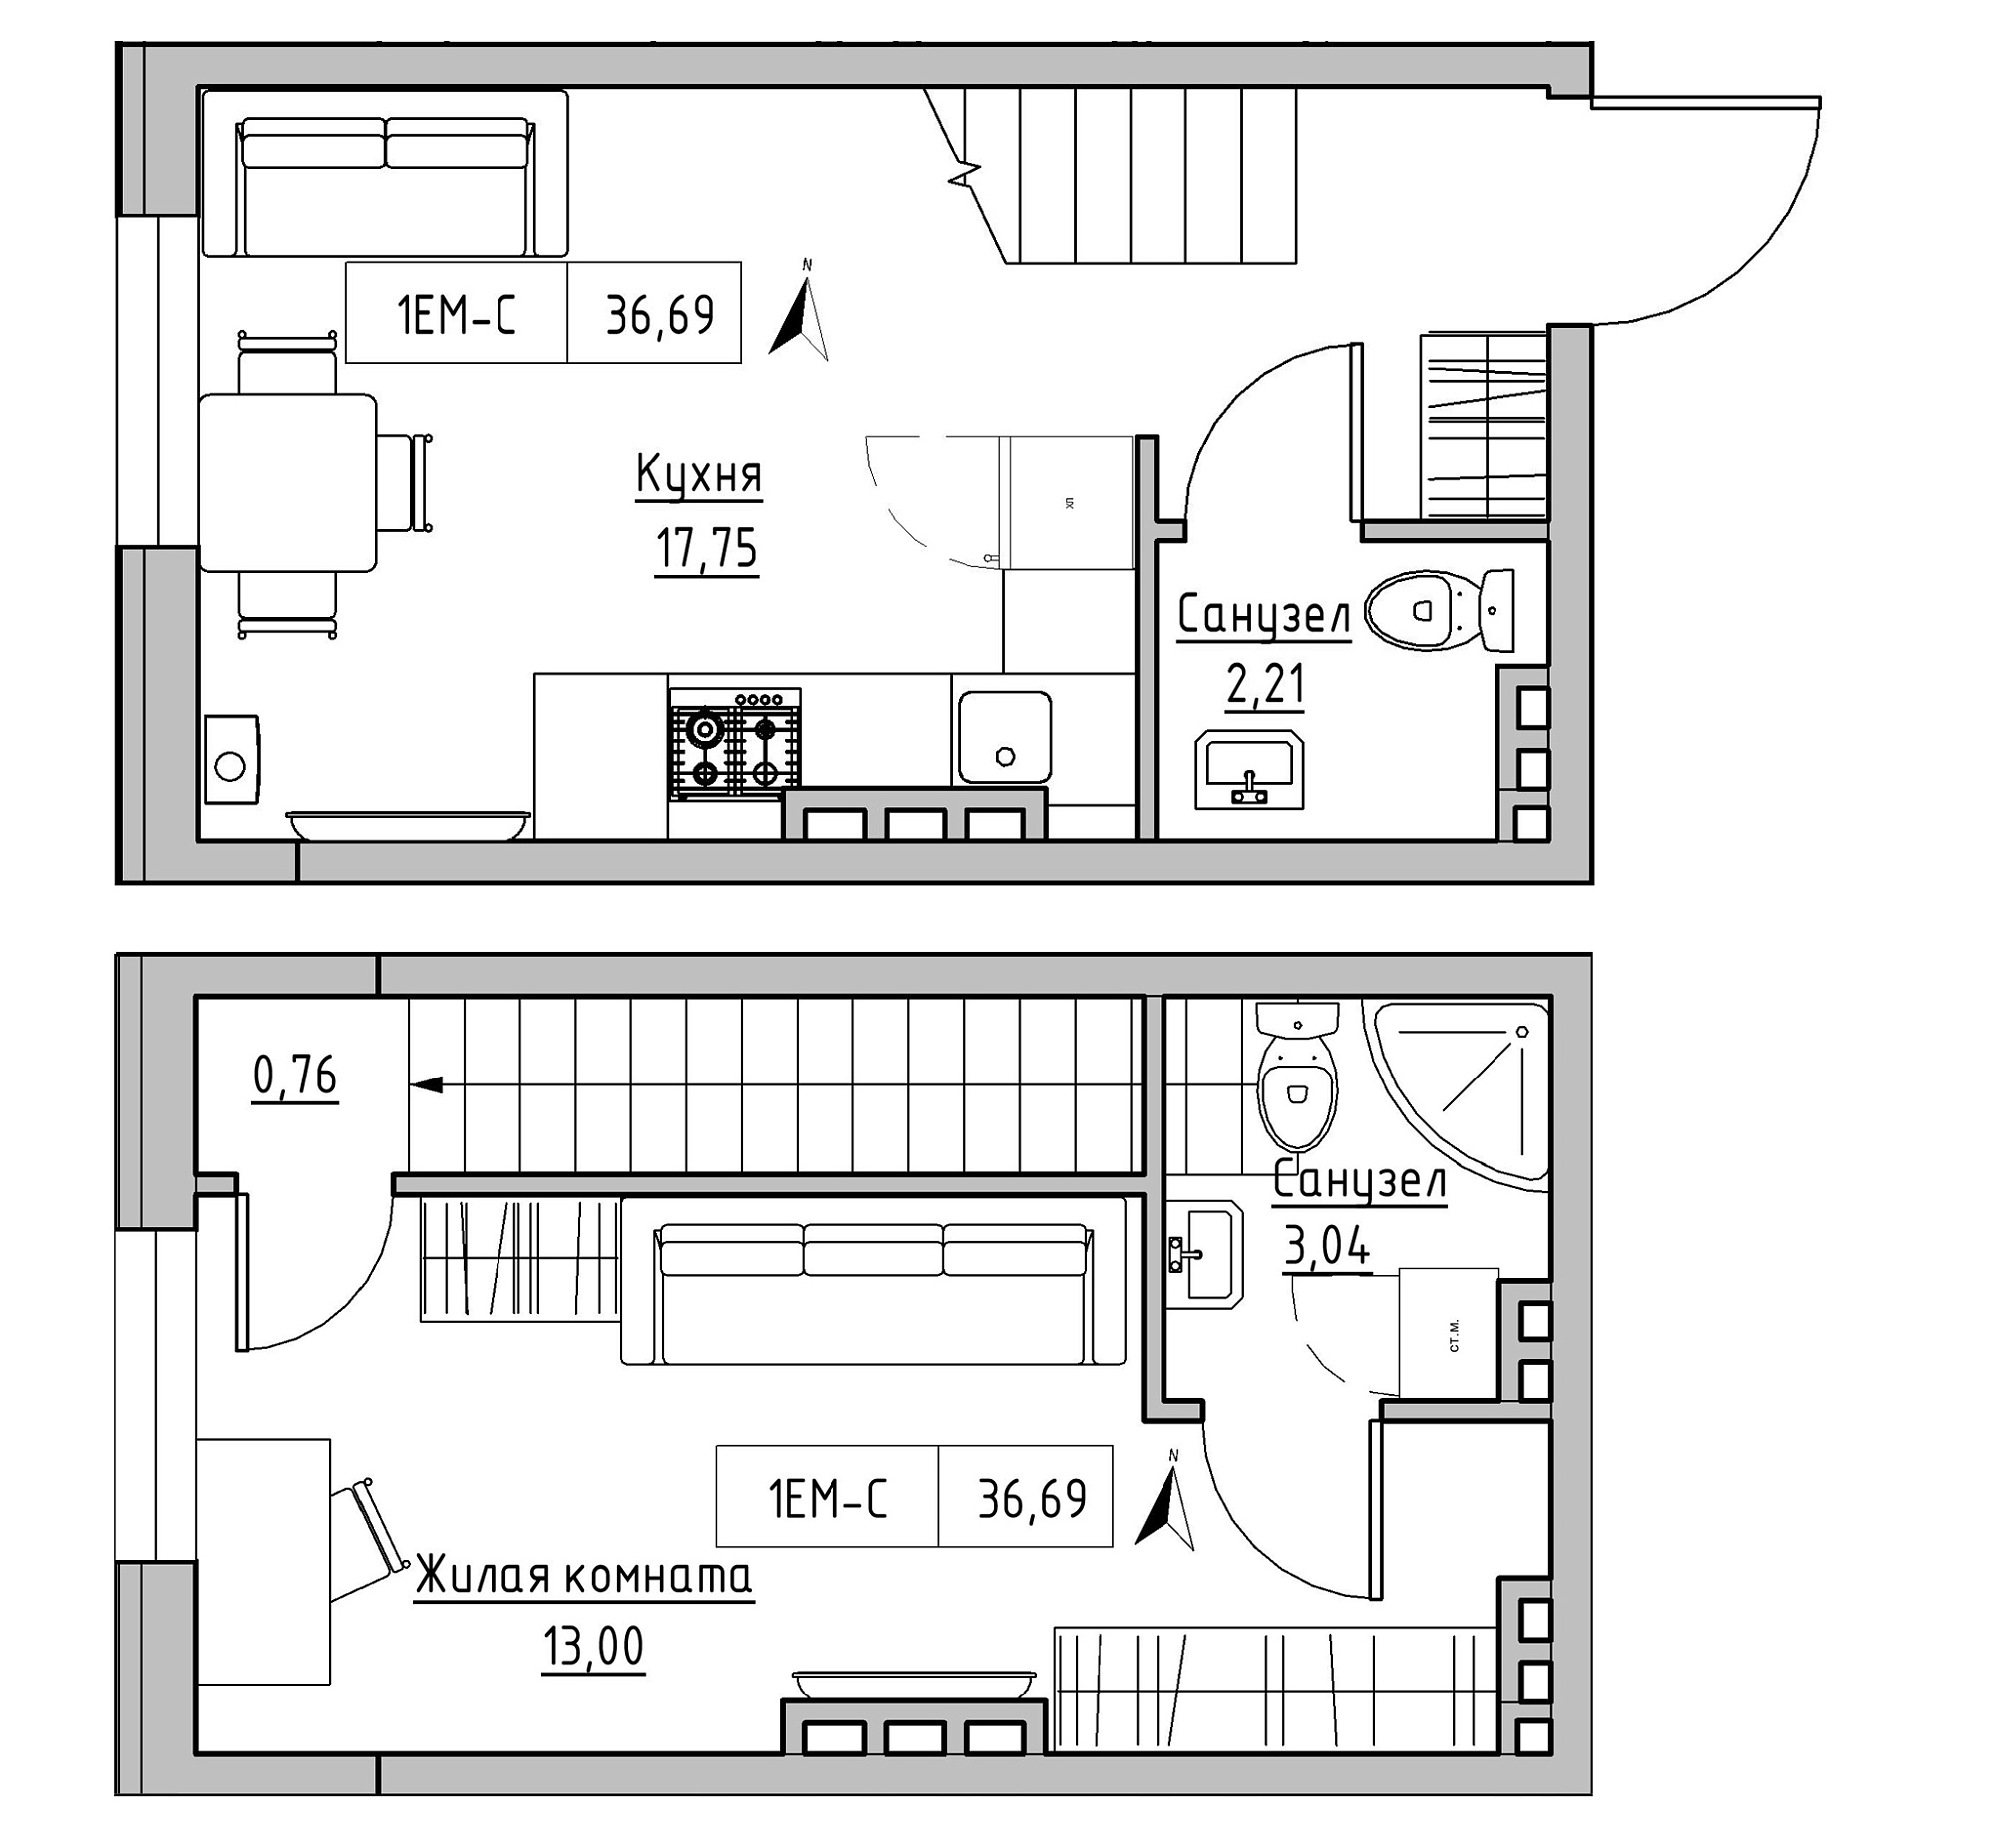 Planning 2-lvl flats area 36.69m2, KS-024-03/0011.